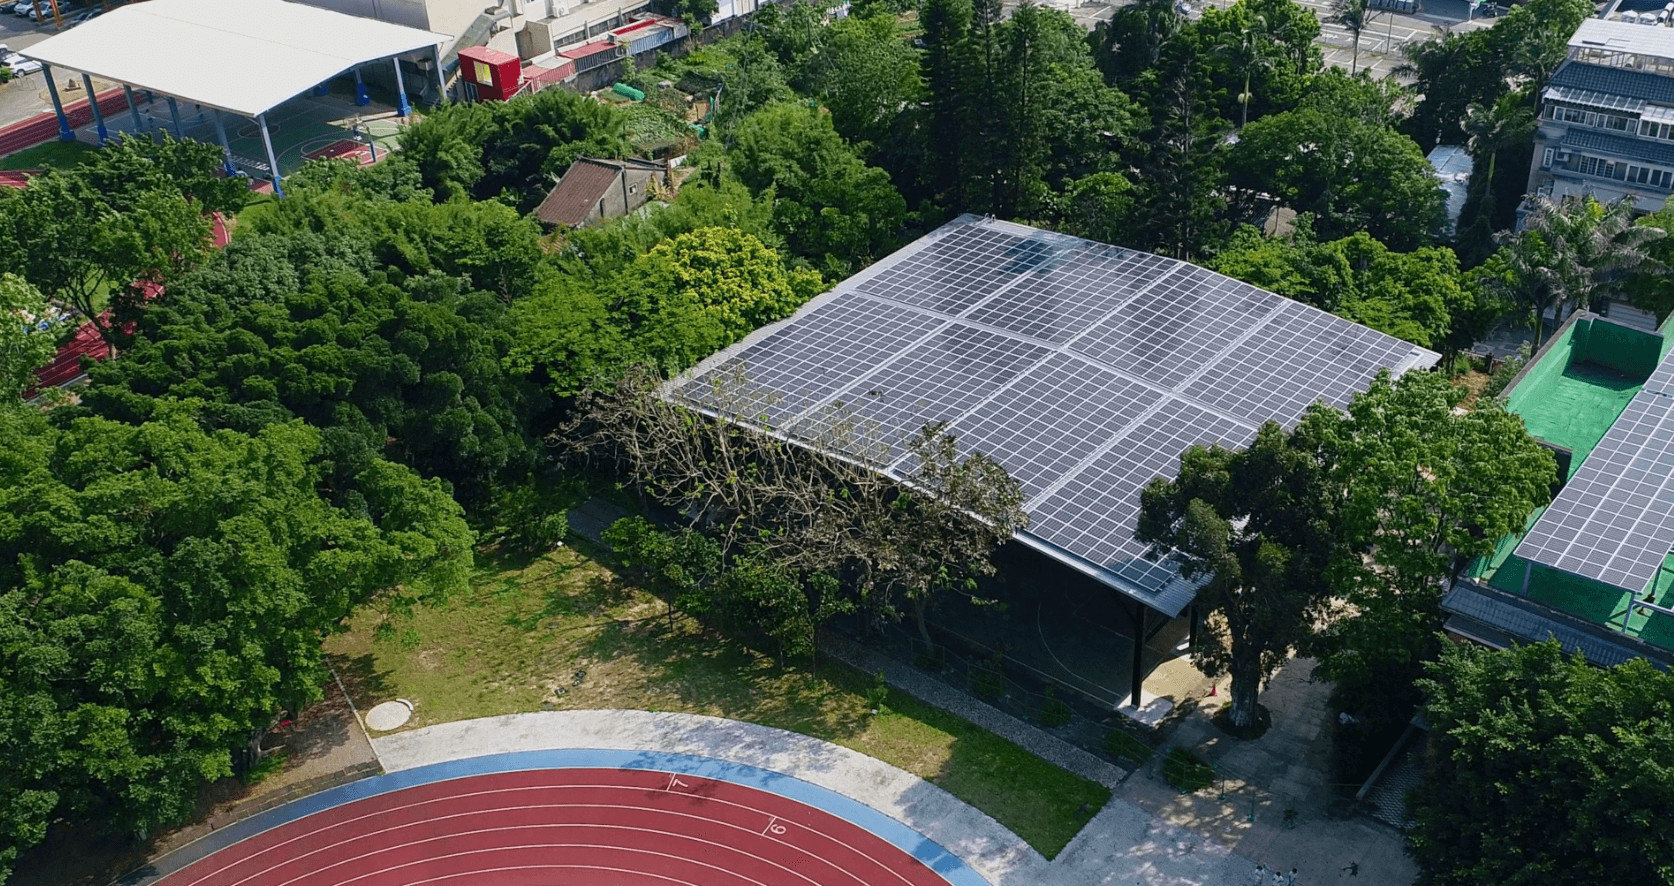 校園太陽能、校園光電、桃園太陽能、太陽能廠商、台灣太陽能、台灣太陽能板、太陽能建置、校園種電、屋頂型種電、太陽能種電、種電、太陽板、太陽能品牌、太陽能廠商、台灣太陽能品牌、台灣太陽能廠商、屋頂型太陽能、校園屋頂太陽能